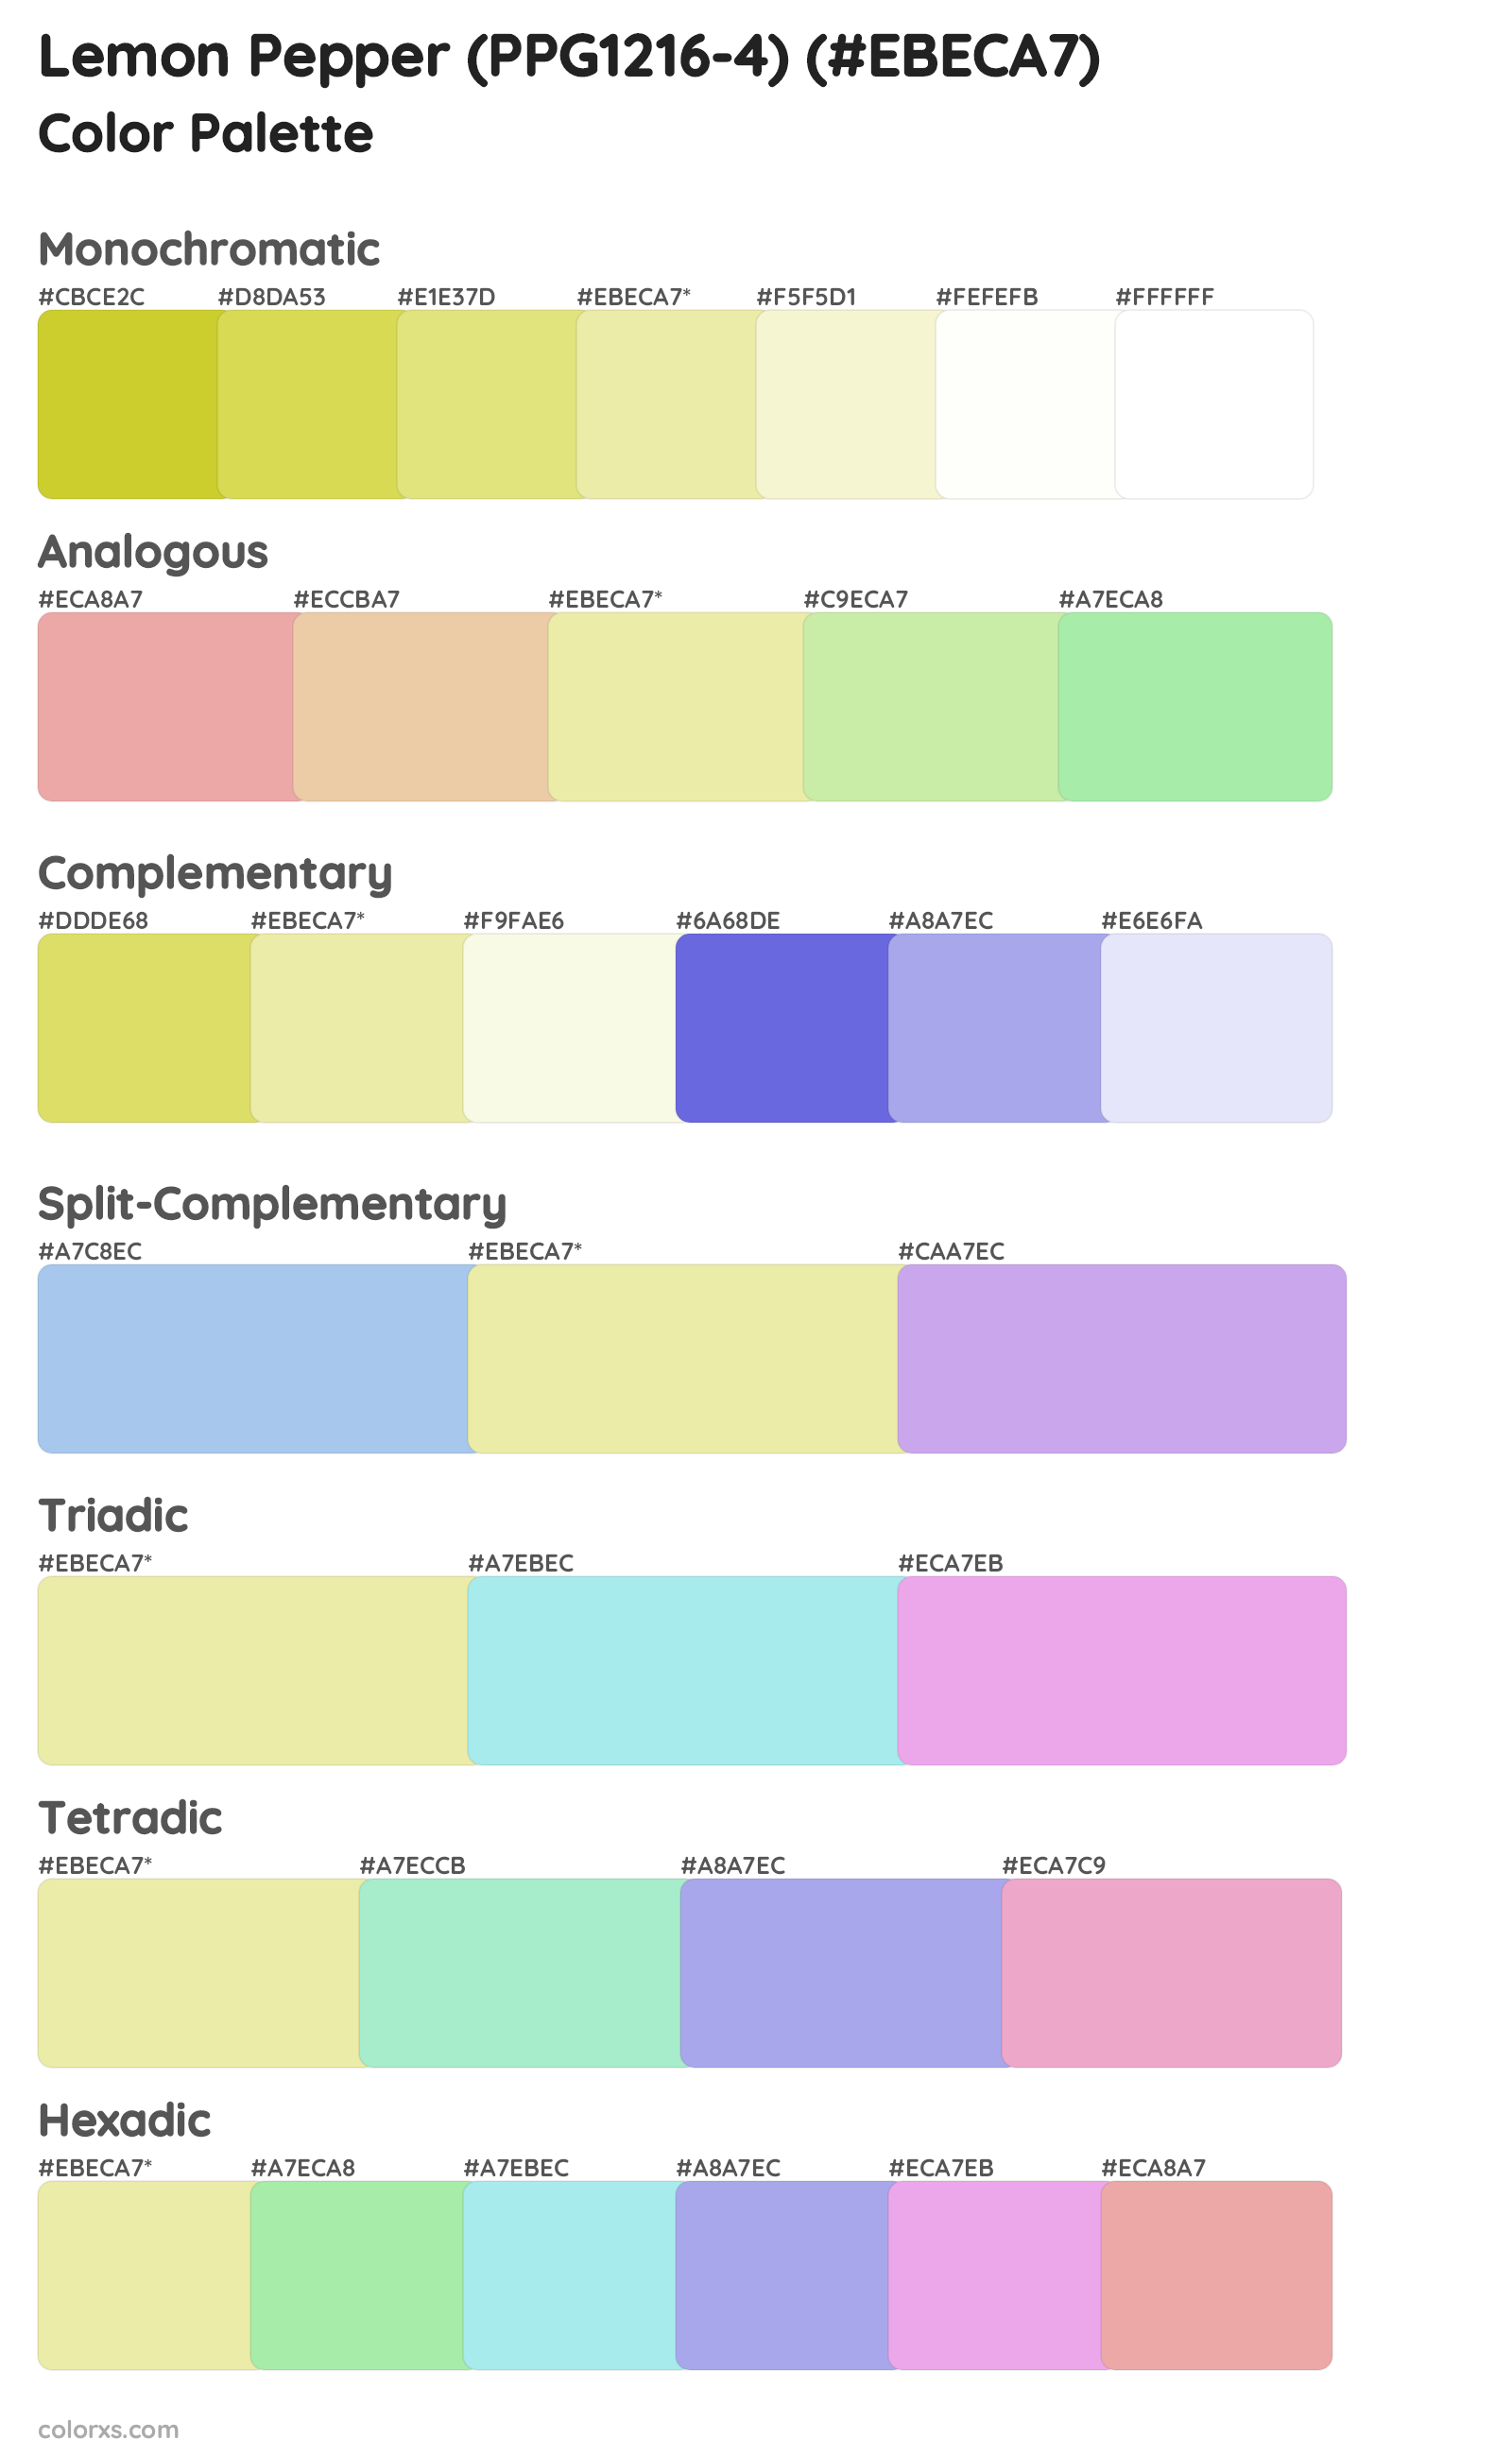 Lemon Pepper (PPG1216-4) Color Scheme Palettes